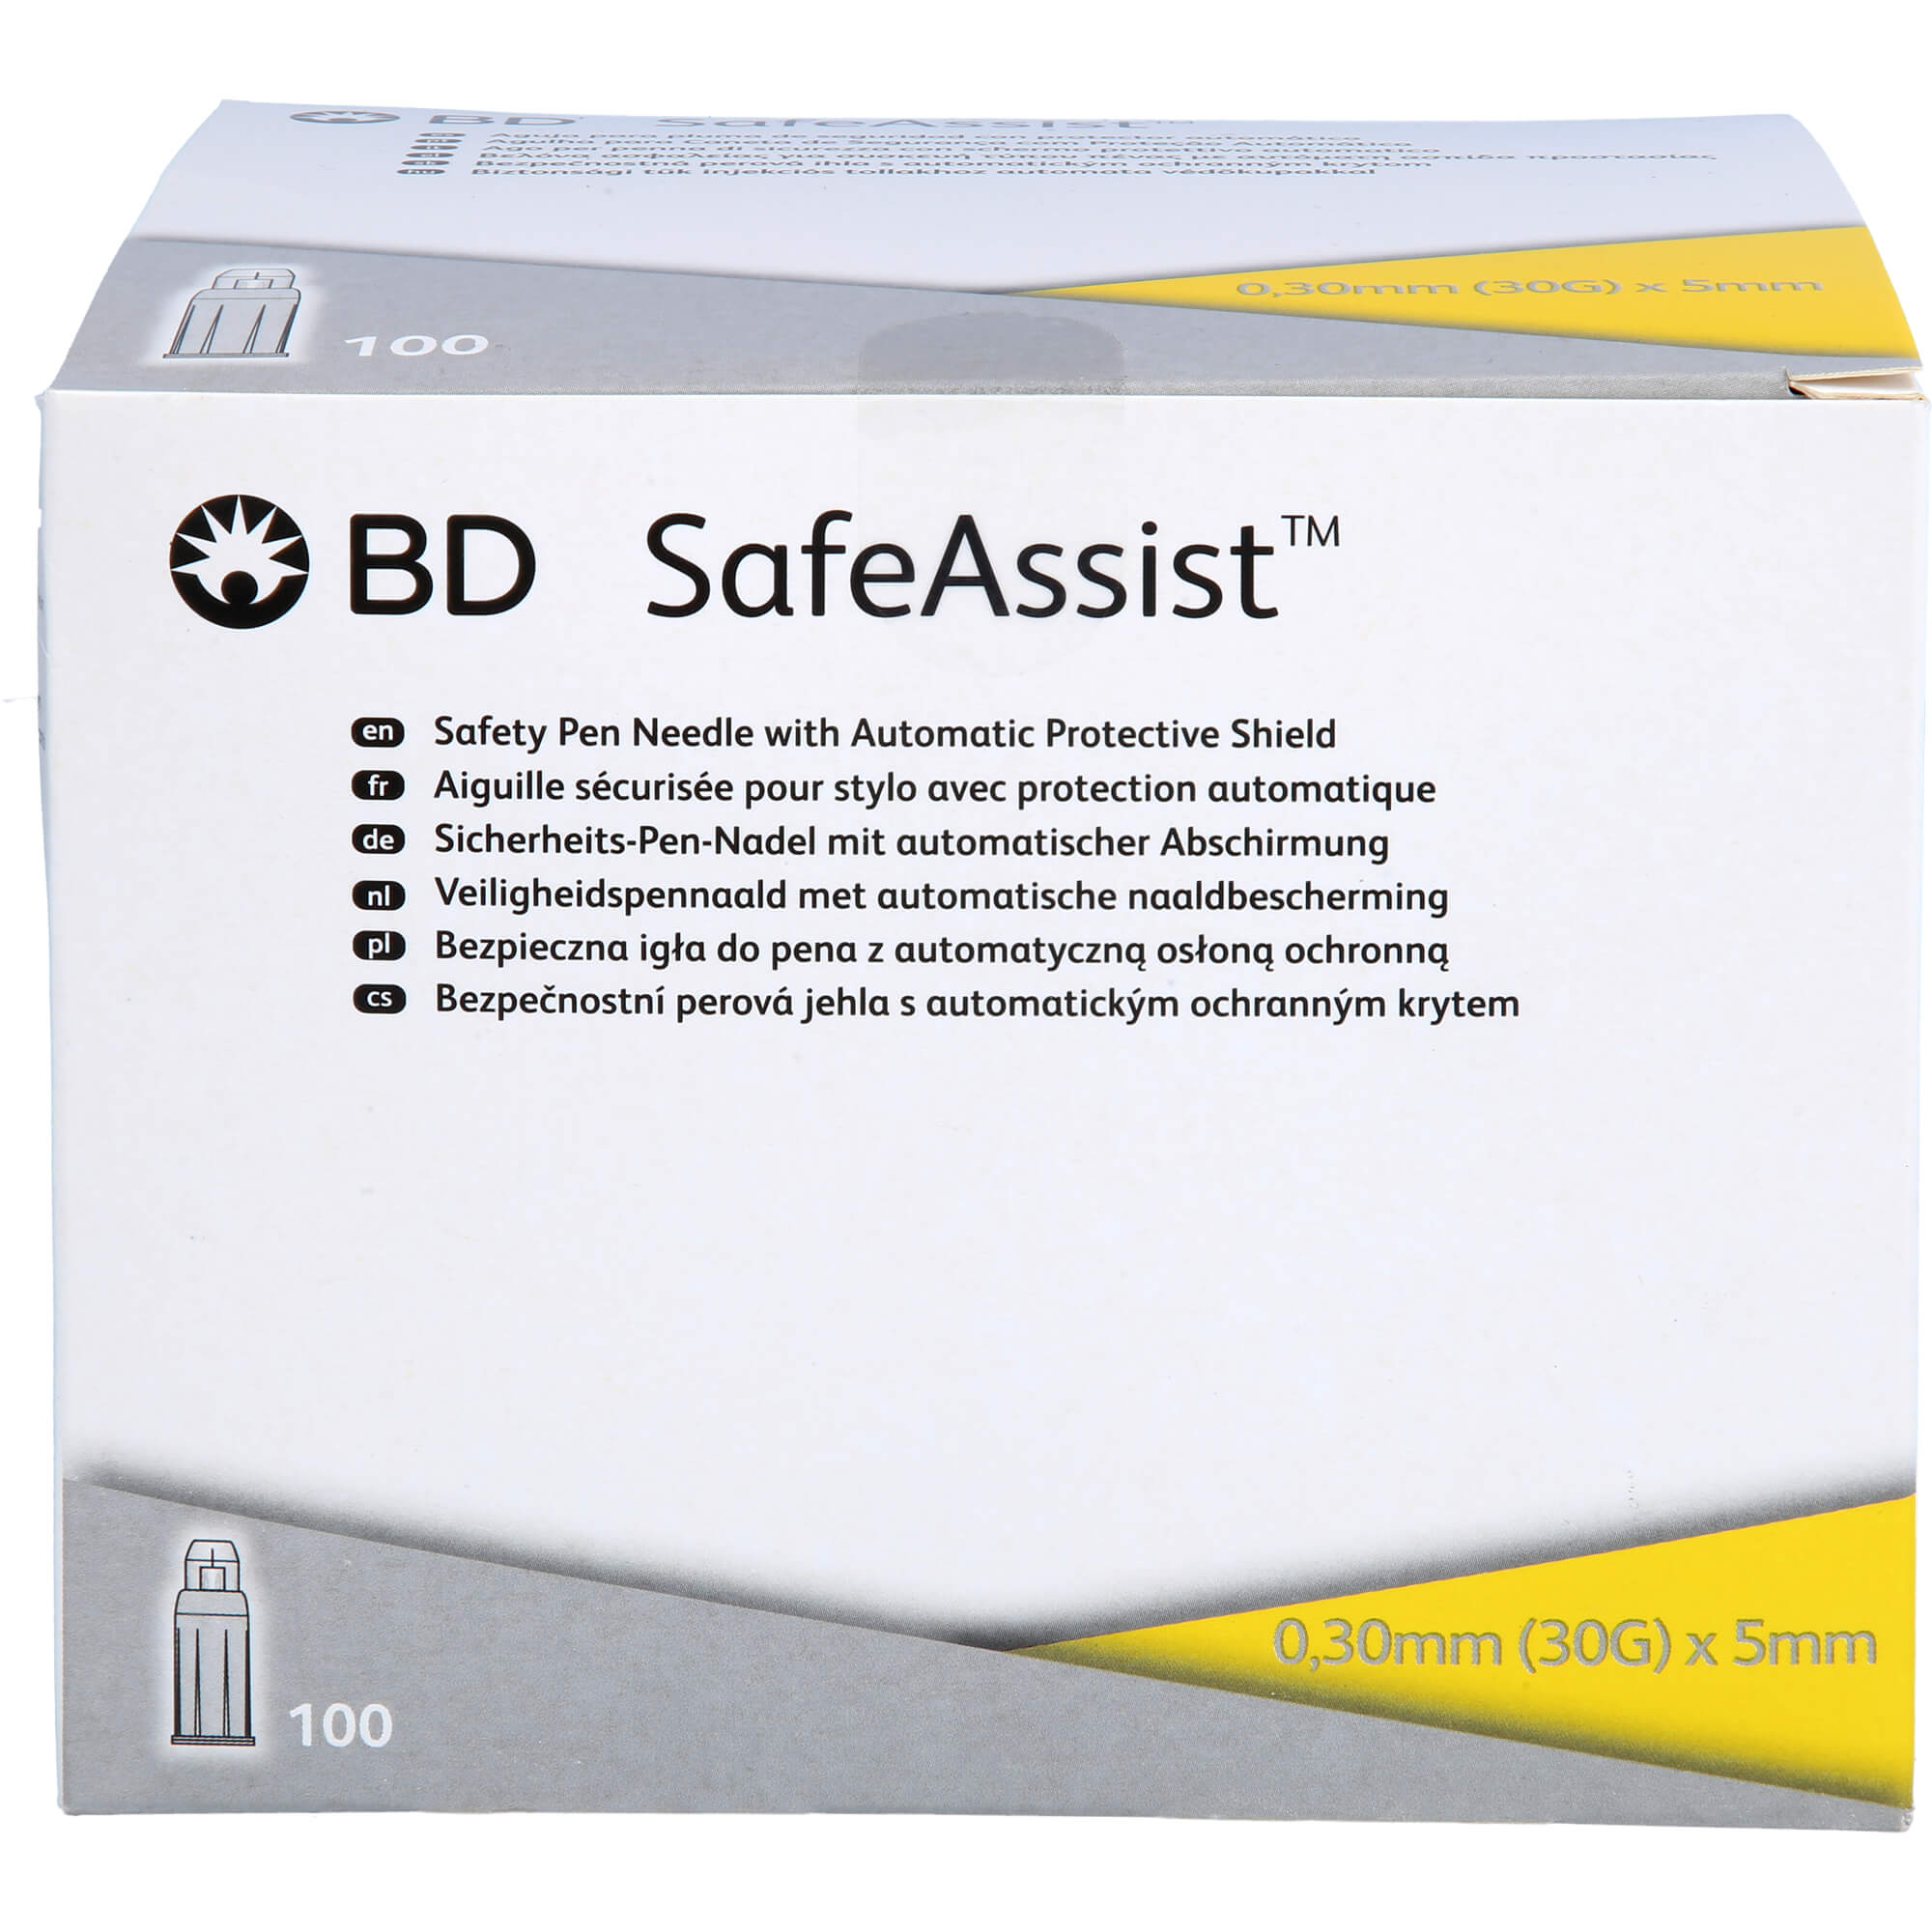 BD SAFEASSIST Sicherheits-Pen-Nadel 30 Gx 5 mm